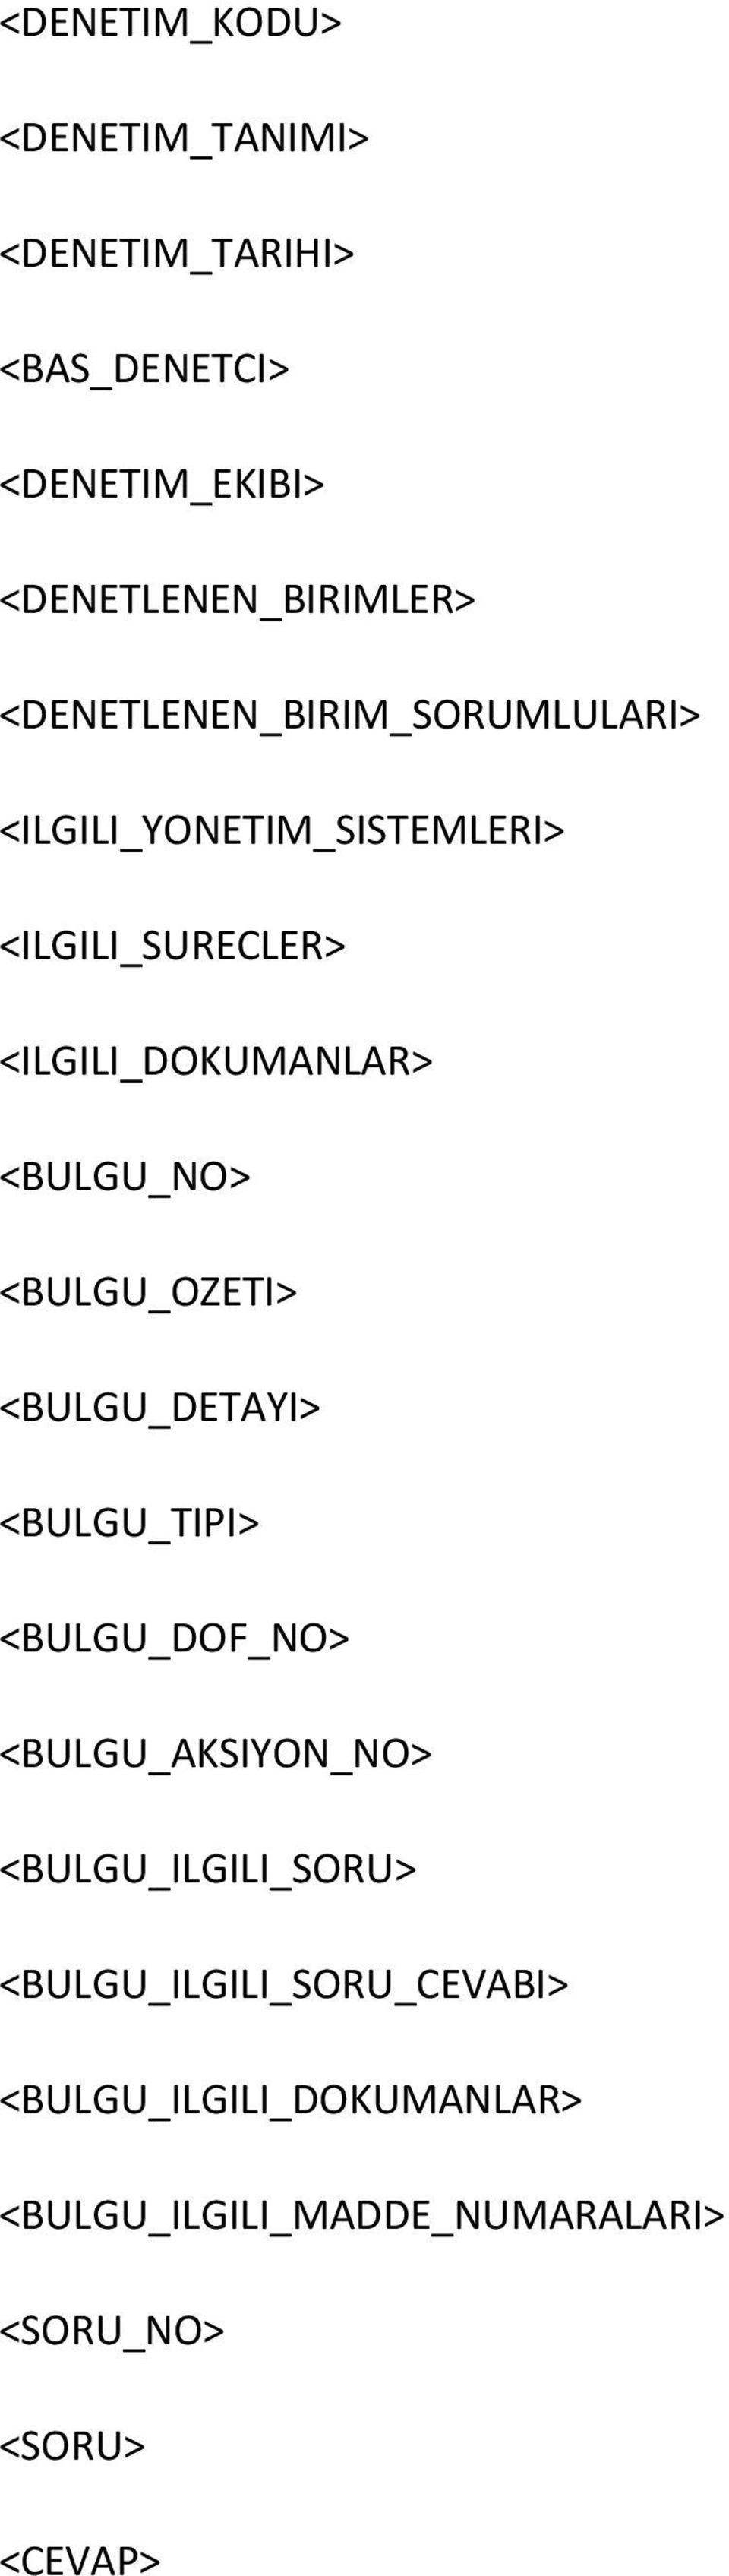 <BULGU_NO> <BULGU_OZETI> <BULGU_DETAYI> <BULGU_TIPI> <BULGU_DOF_NO> <BULGU_AKSIYON_NO>